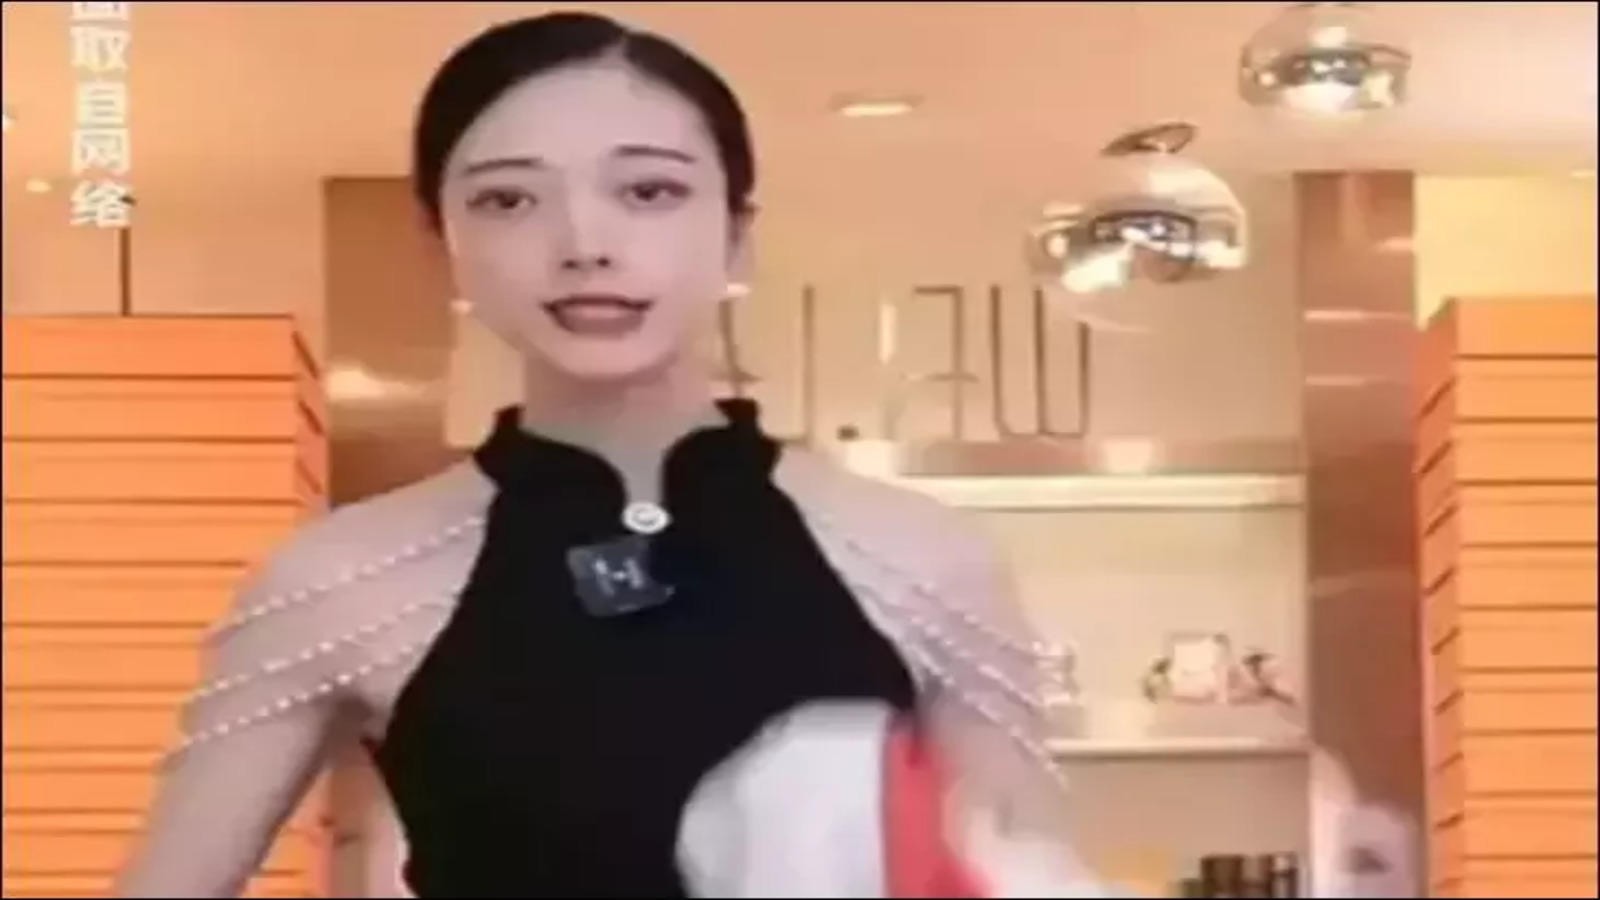 Zheng Xiang Xiang in the viral video | Credits: zheng.xiangxiang2/Instagram